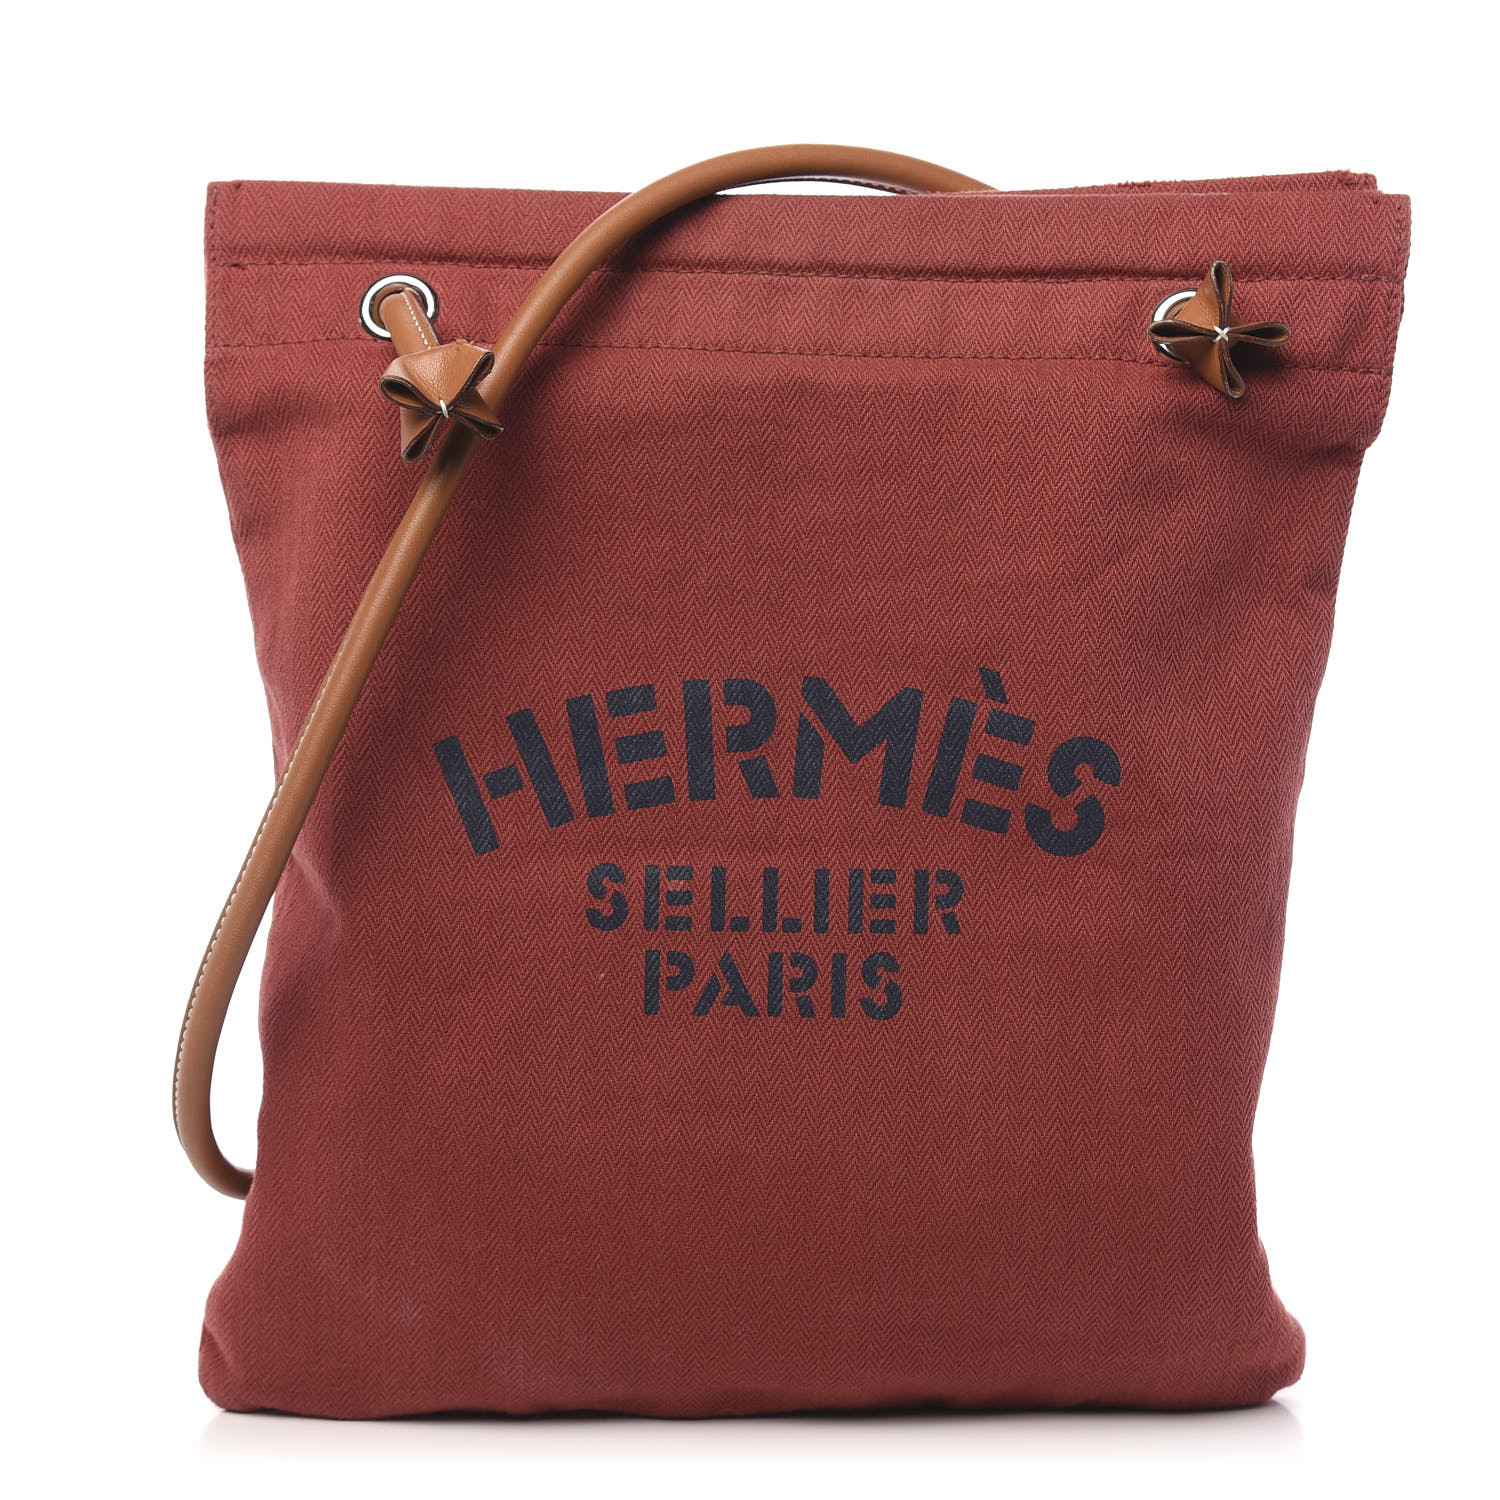 hermes grooming bag